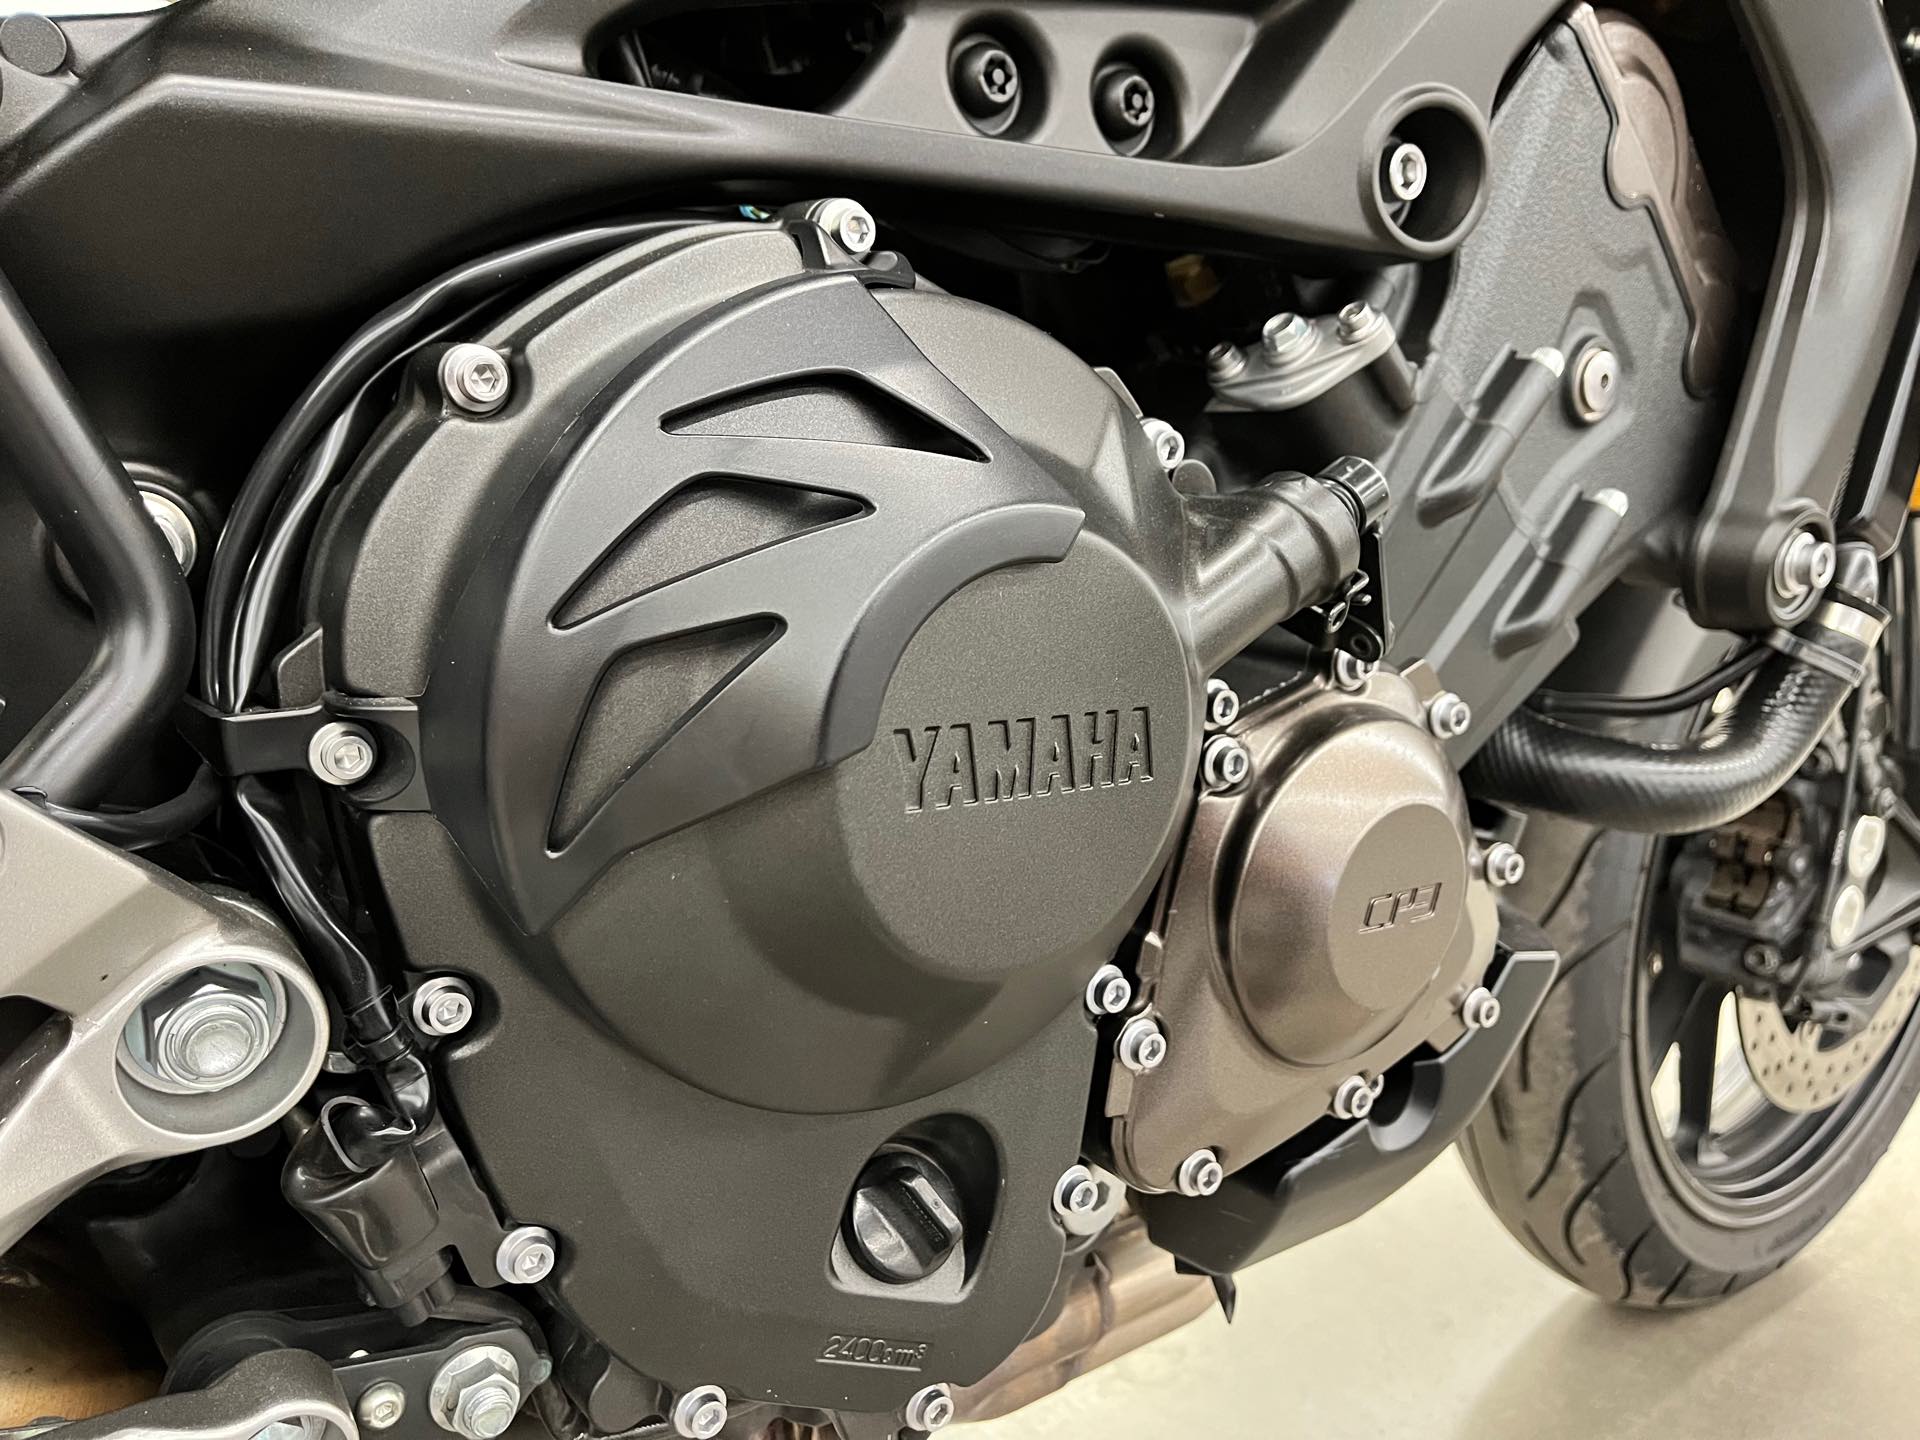 2015 Yamaha FJ 09 at Aces Motorcycles - Denver